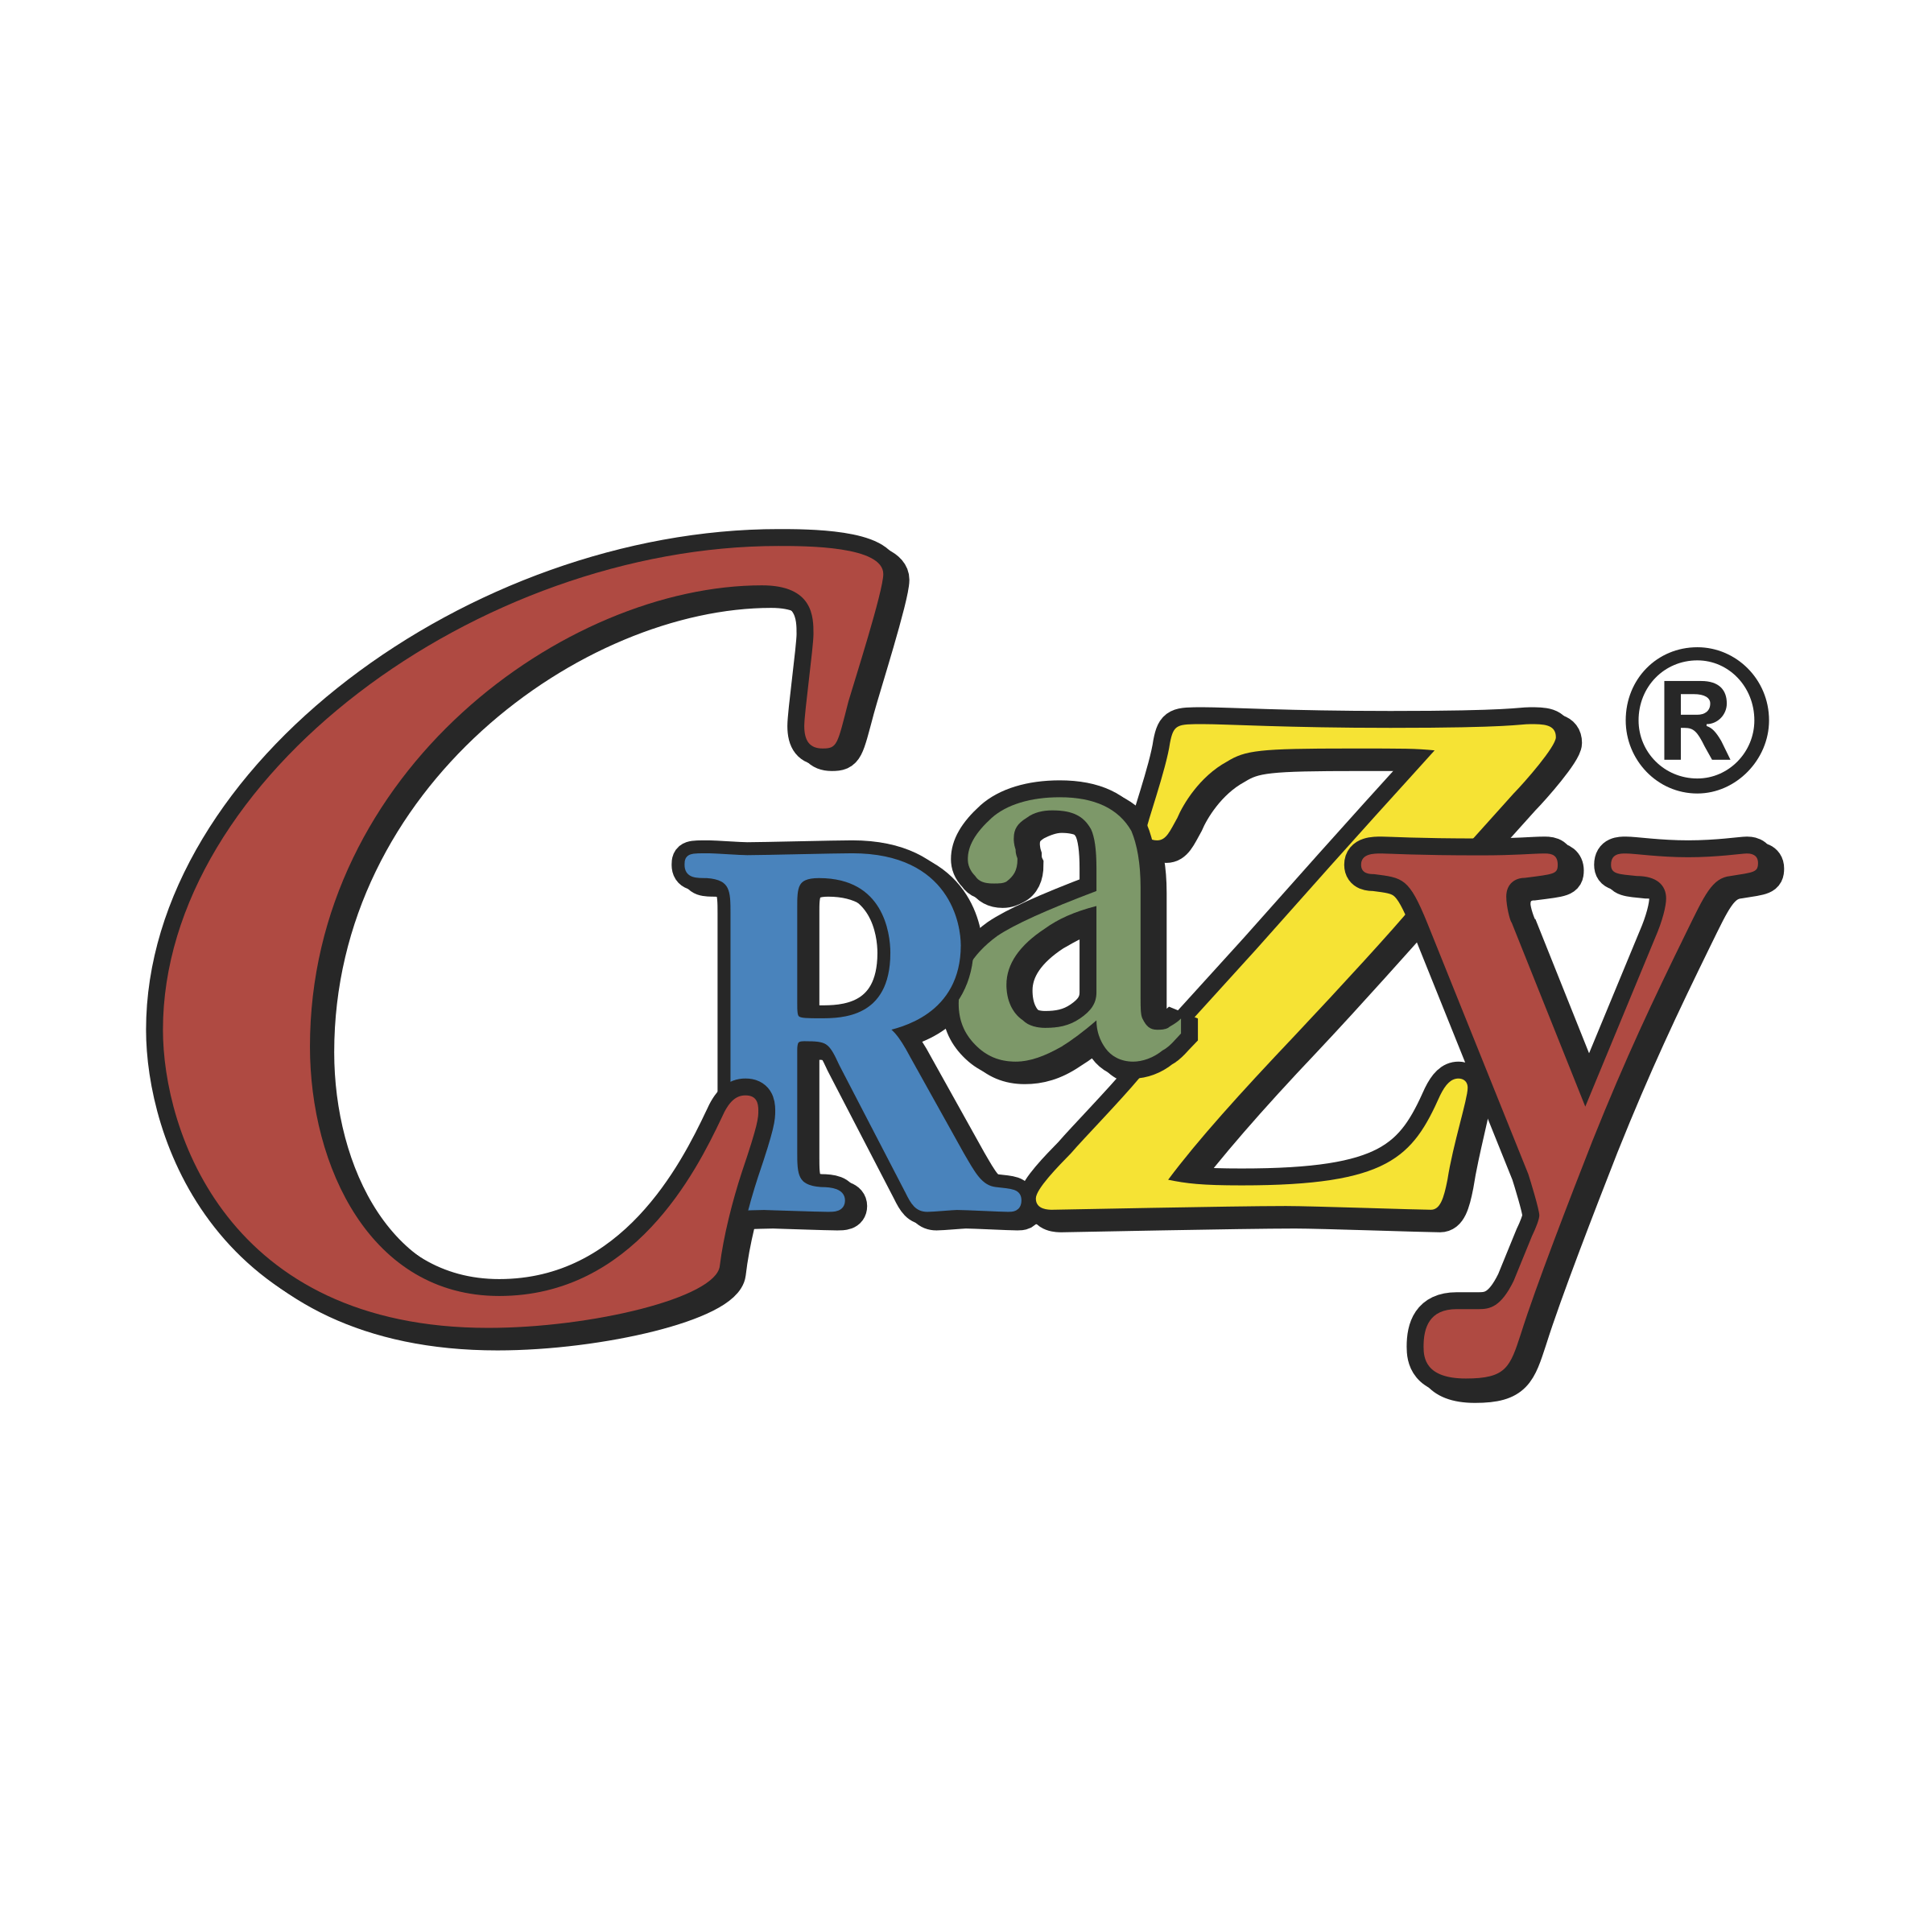 Crazy Logo - Crazy Logo PNG Transparent & SVG Vector